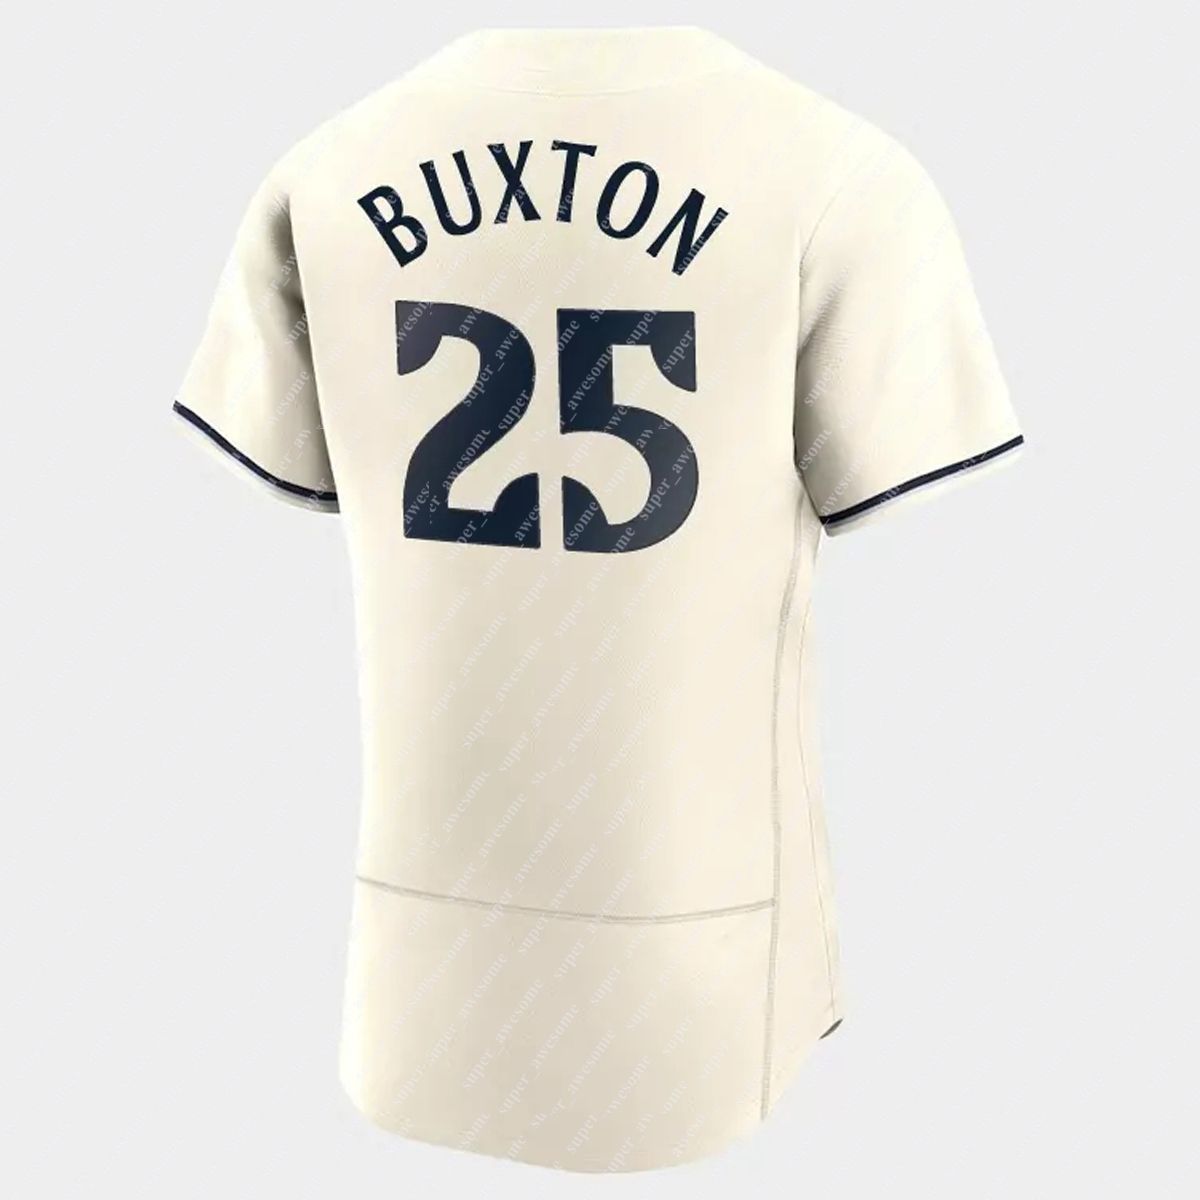 byron buxton jersey